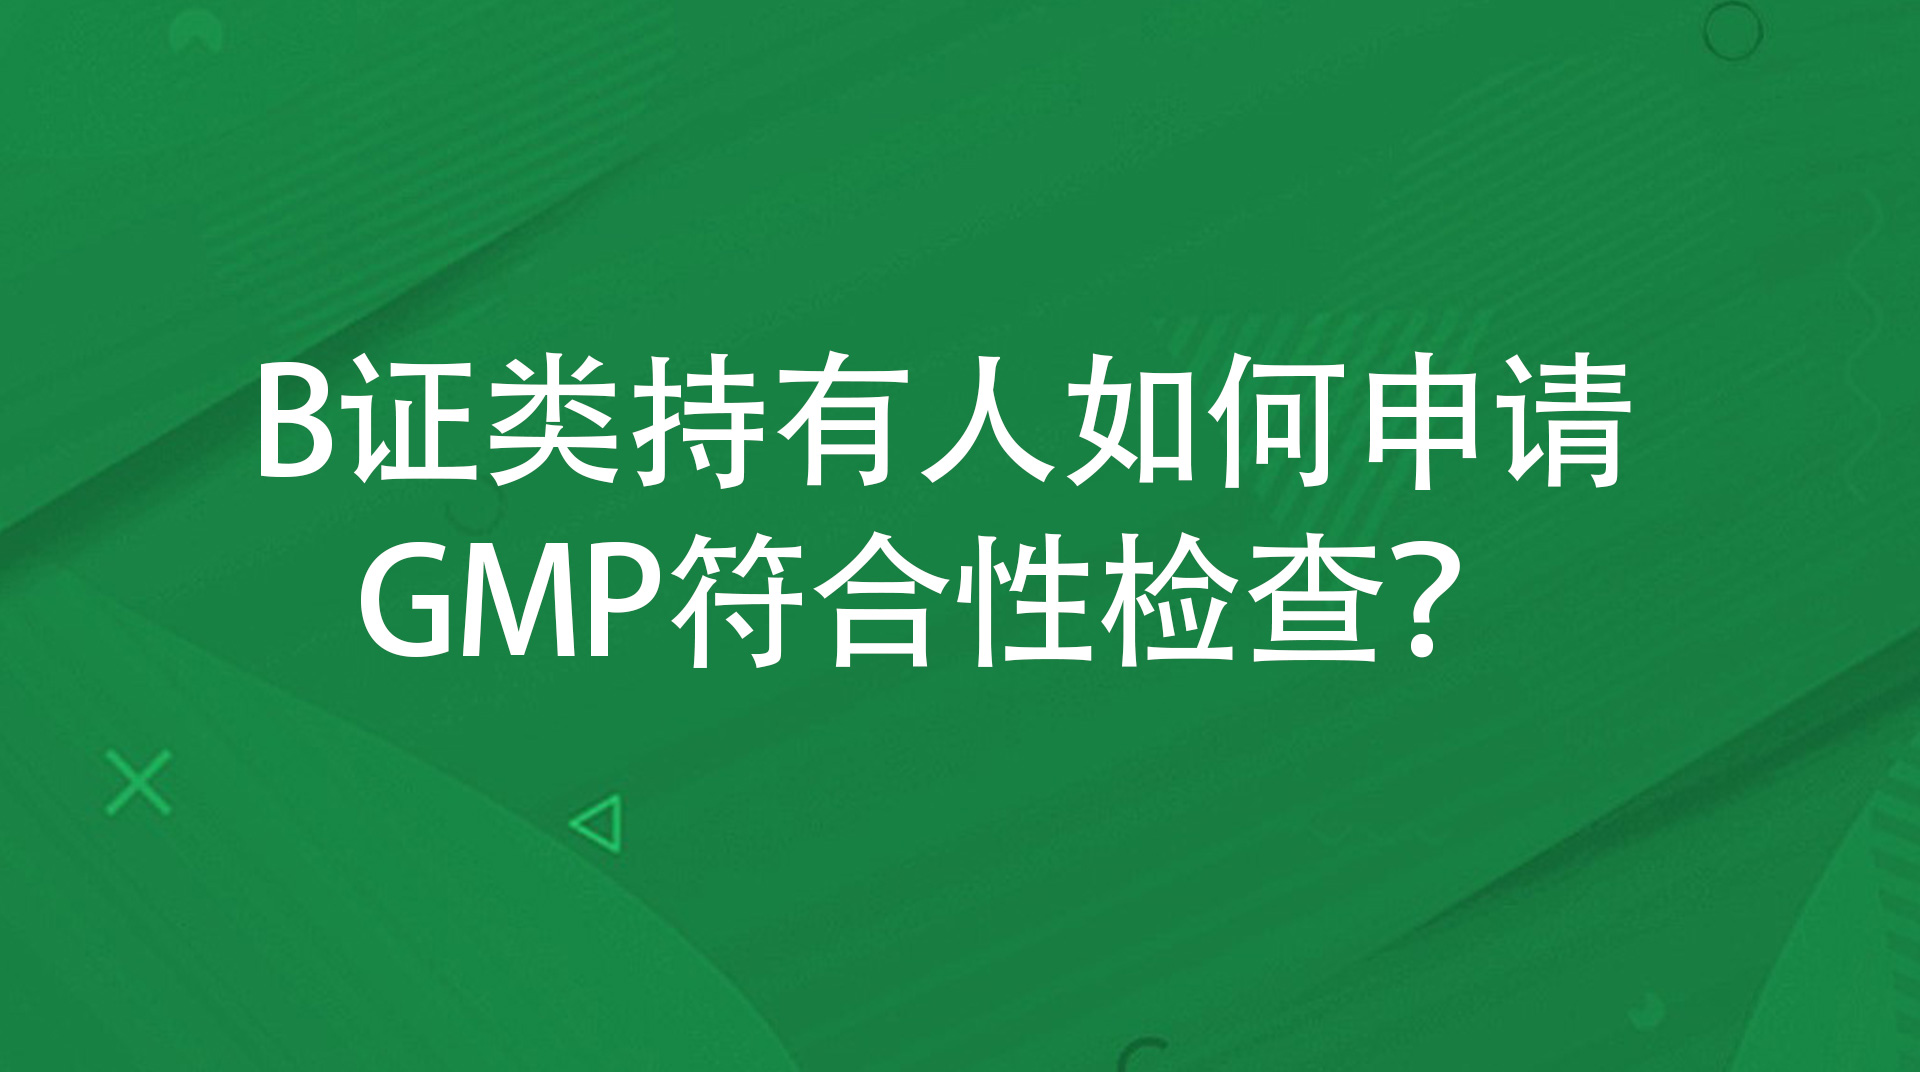 B证类持有人如何申请GMP符合性检查？